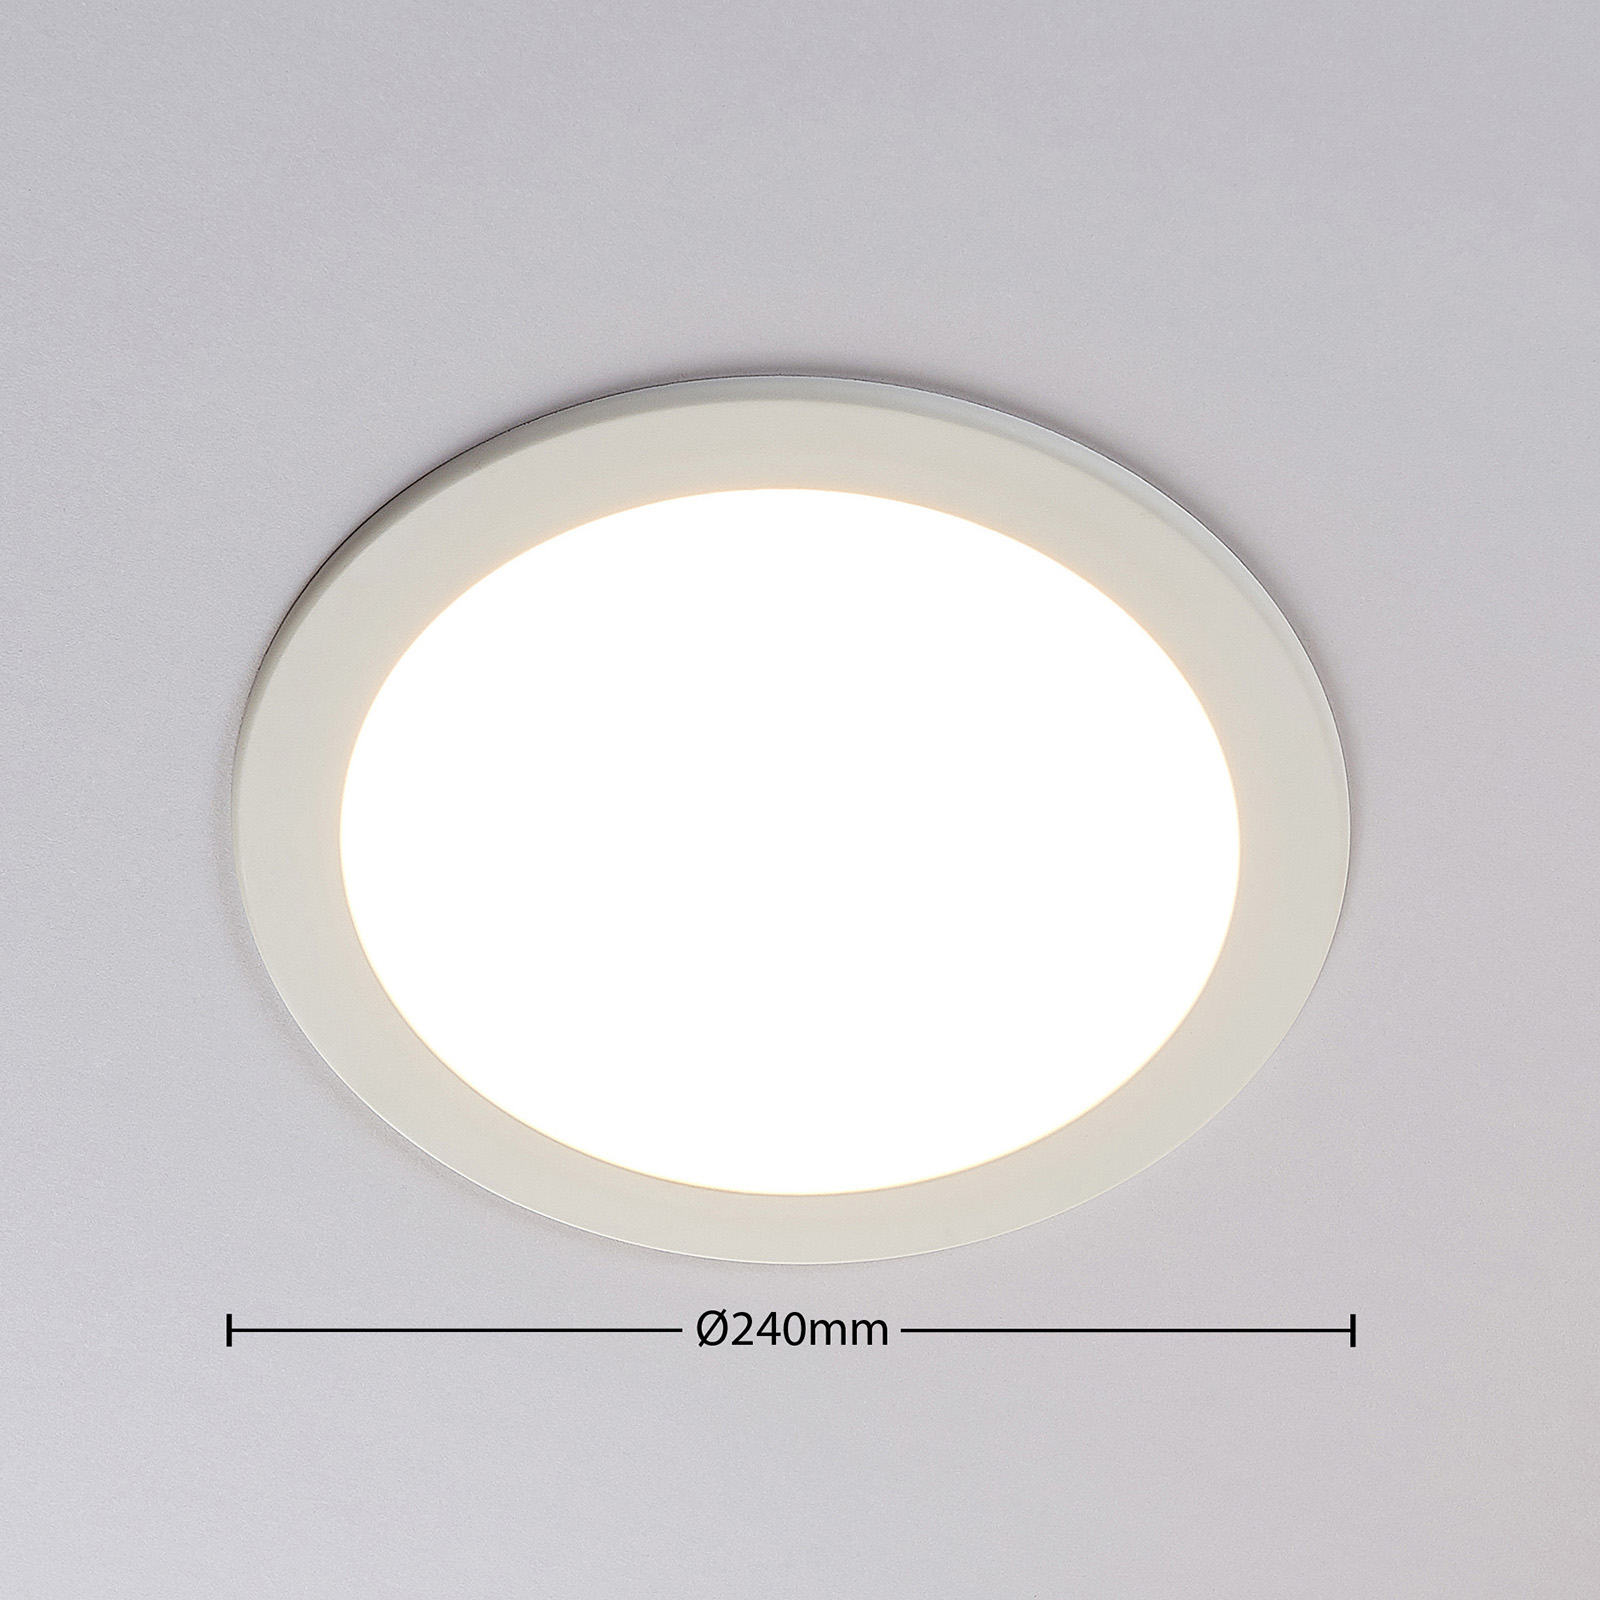 Joki LED downlight white 3,000 K round 24 cm